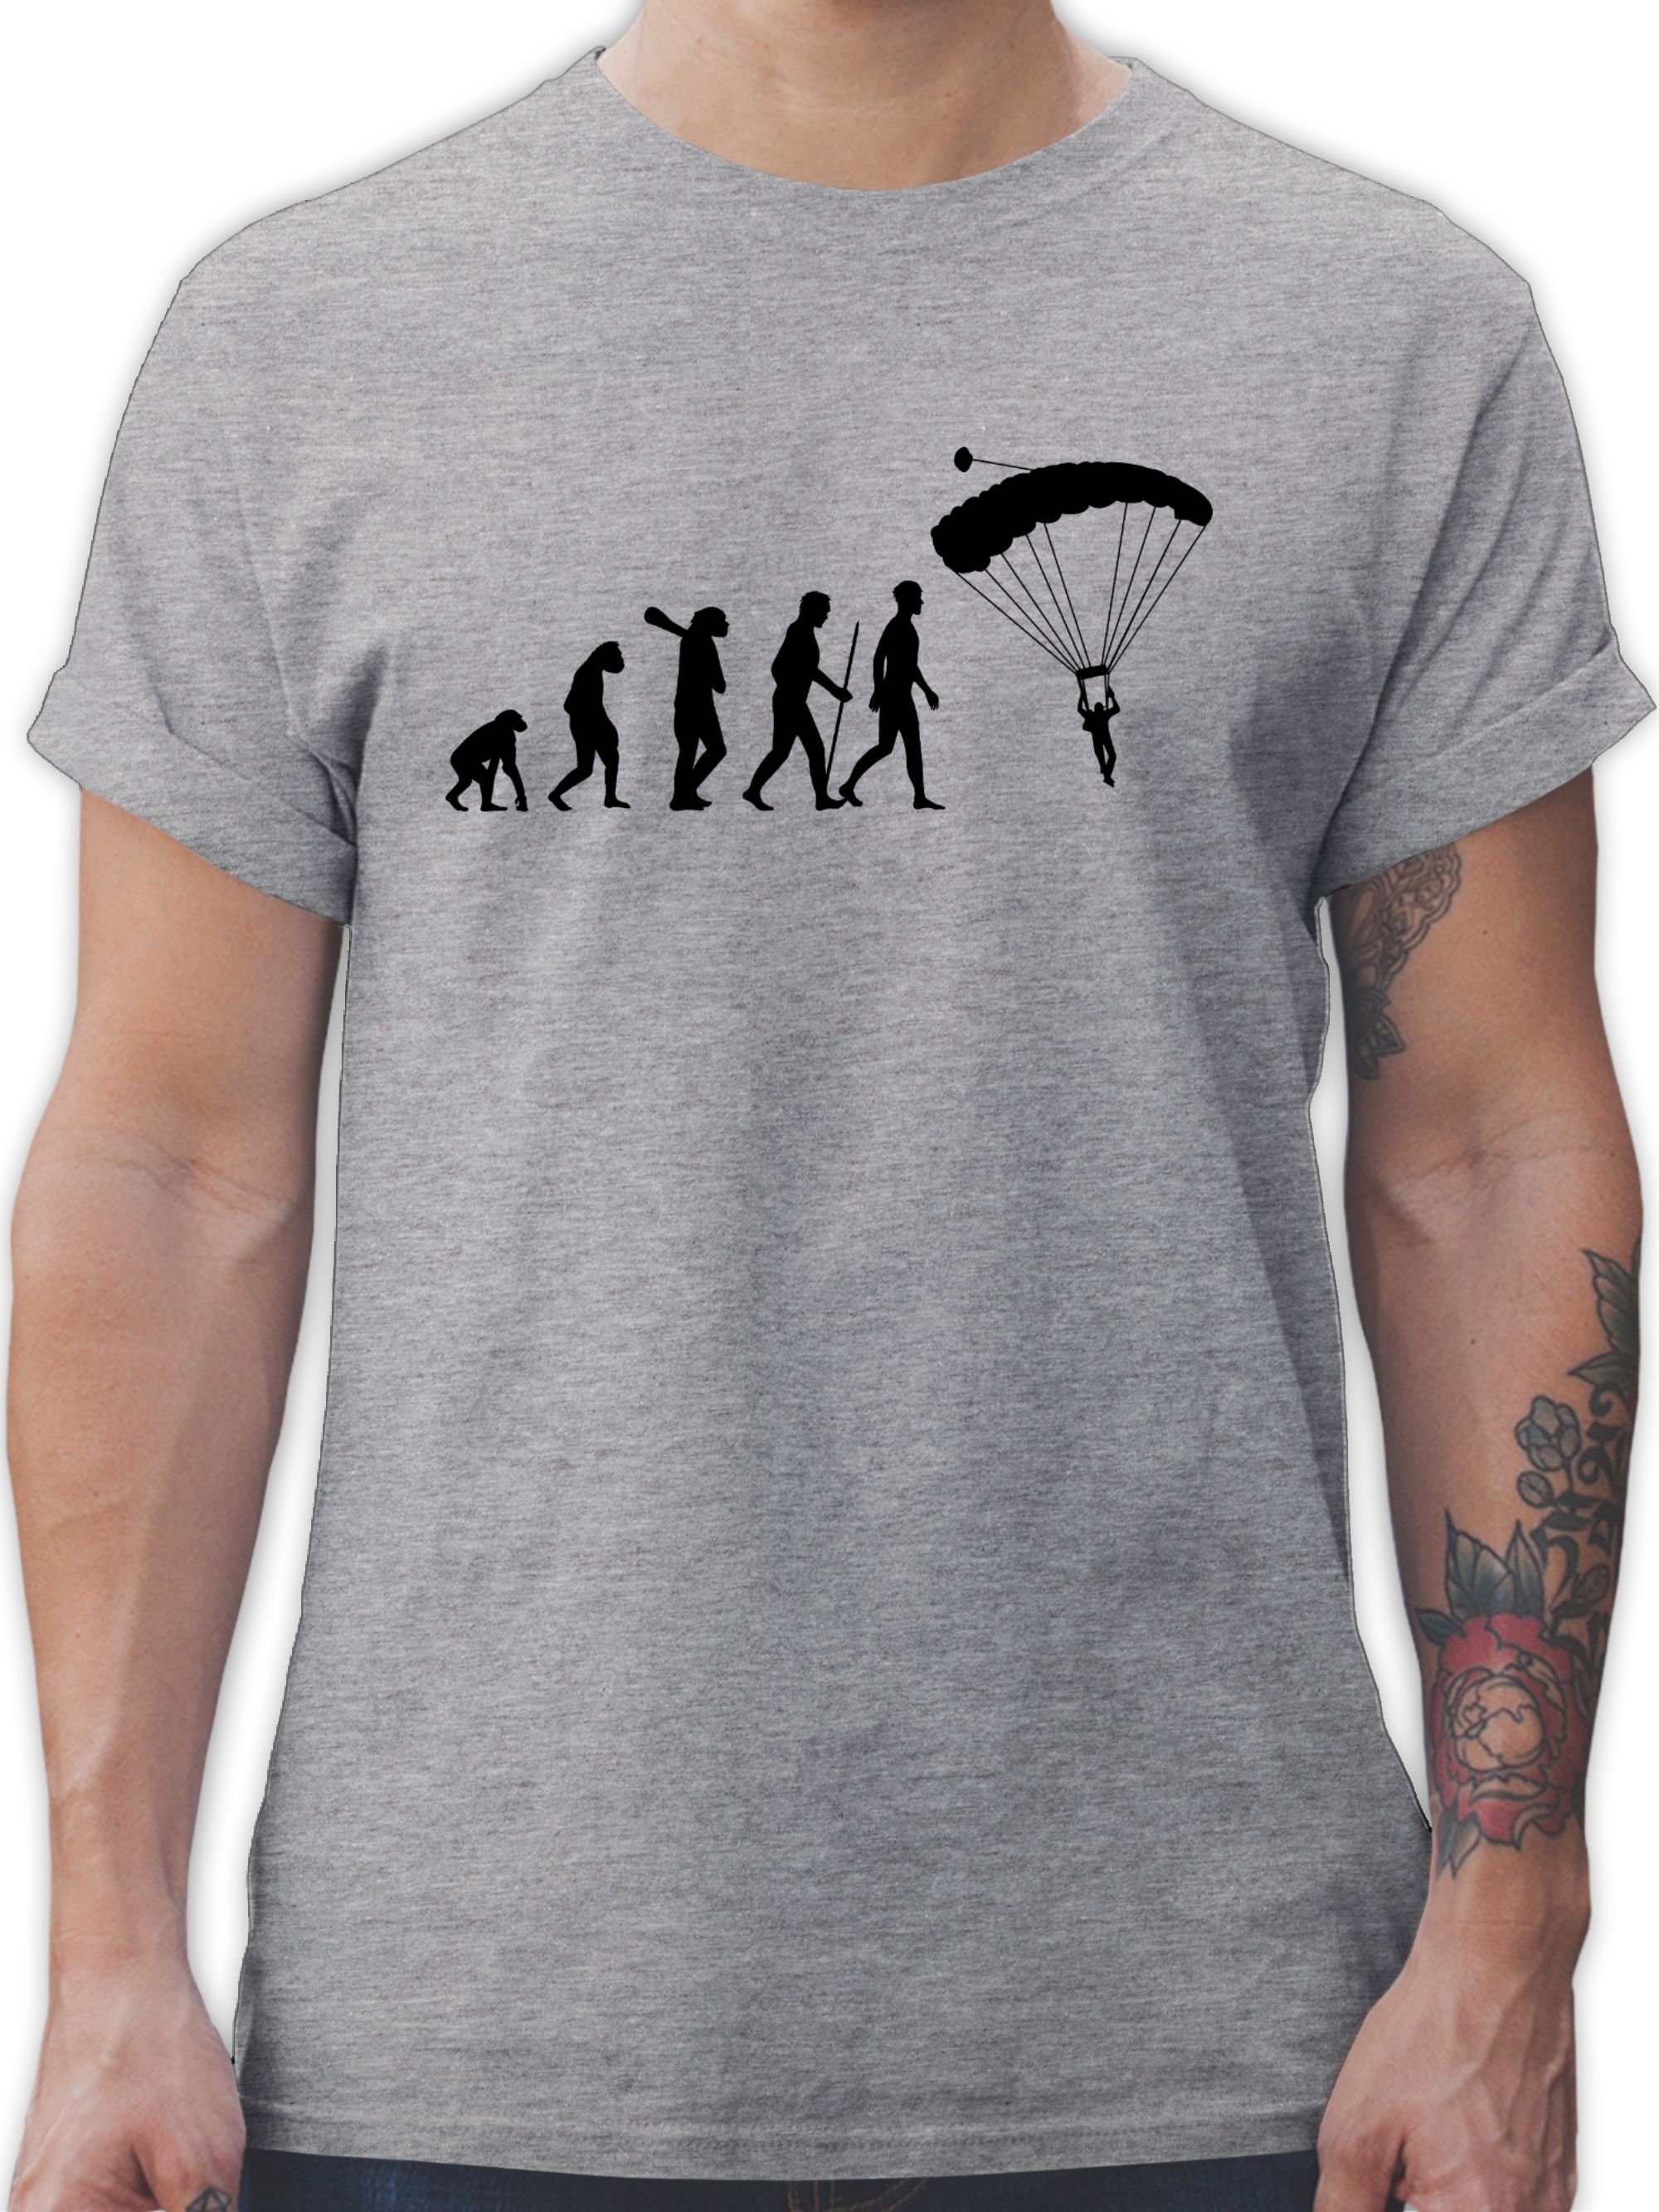 Shirtracer T-Shirt Fallschirmspringen Evolution Evolution Outfit 2 Grau meliert